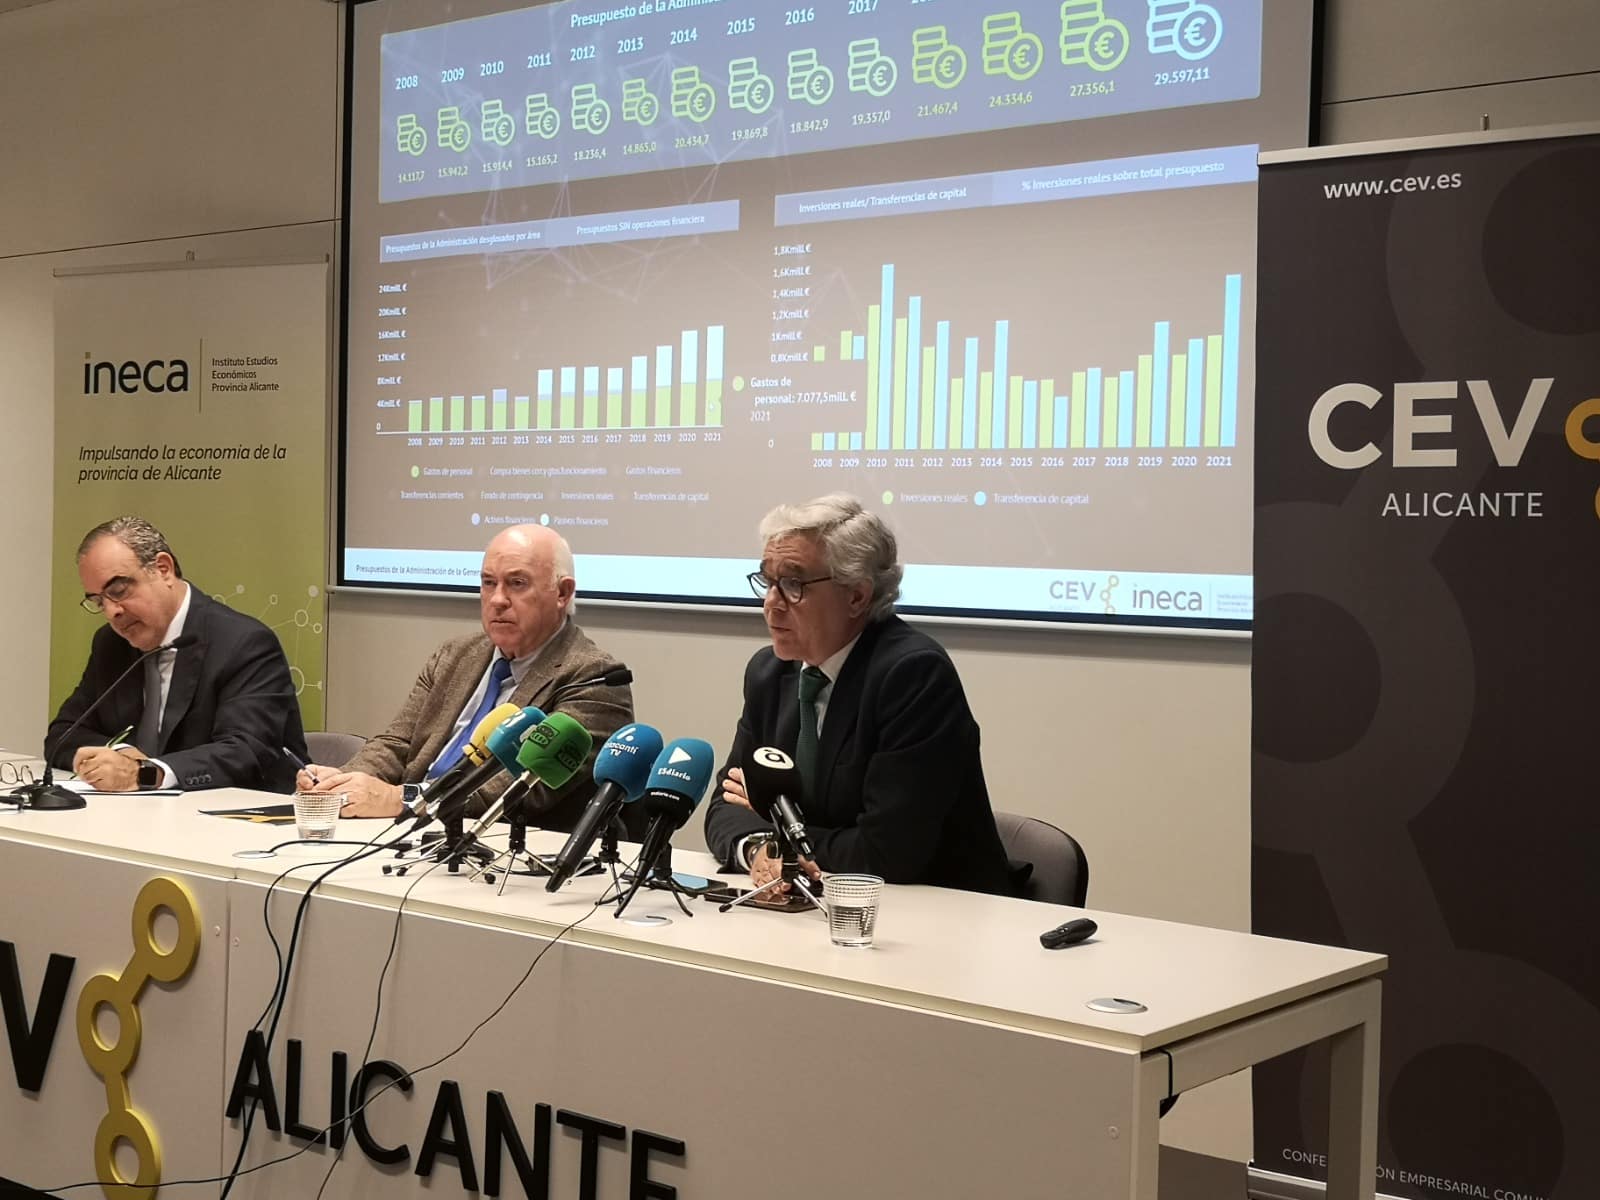 CEV Alicante e INECA denuncian la reiterada falta de ejecución de los presupuestos del Consell